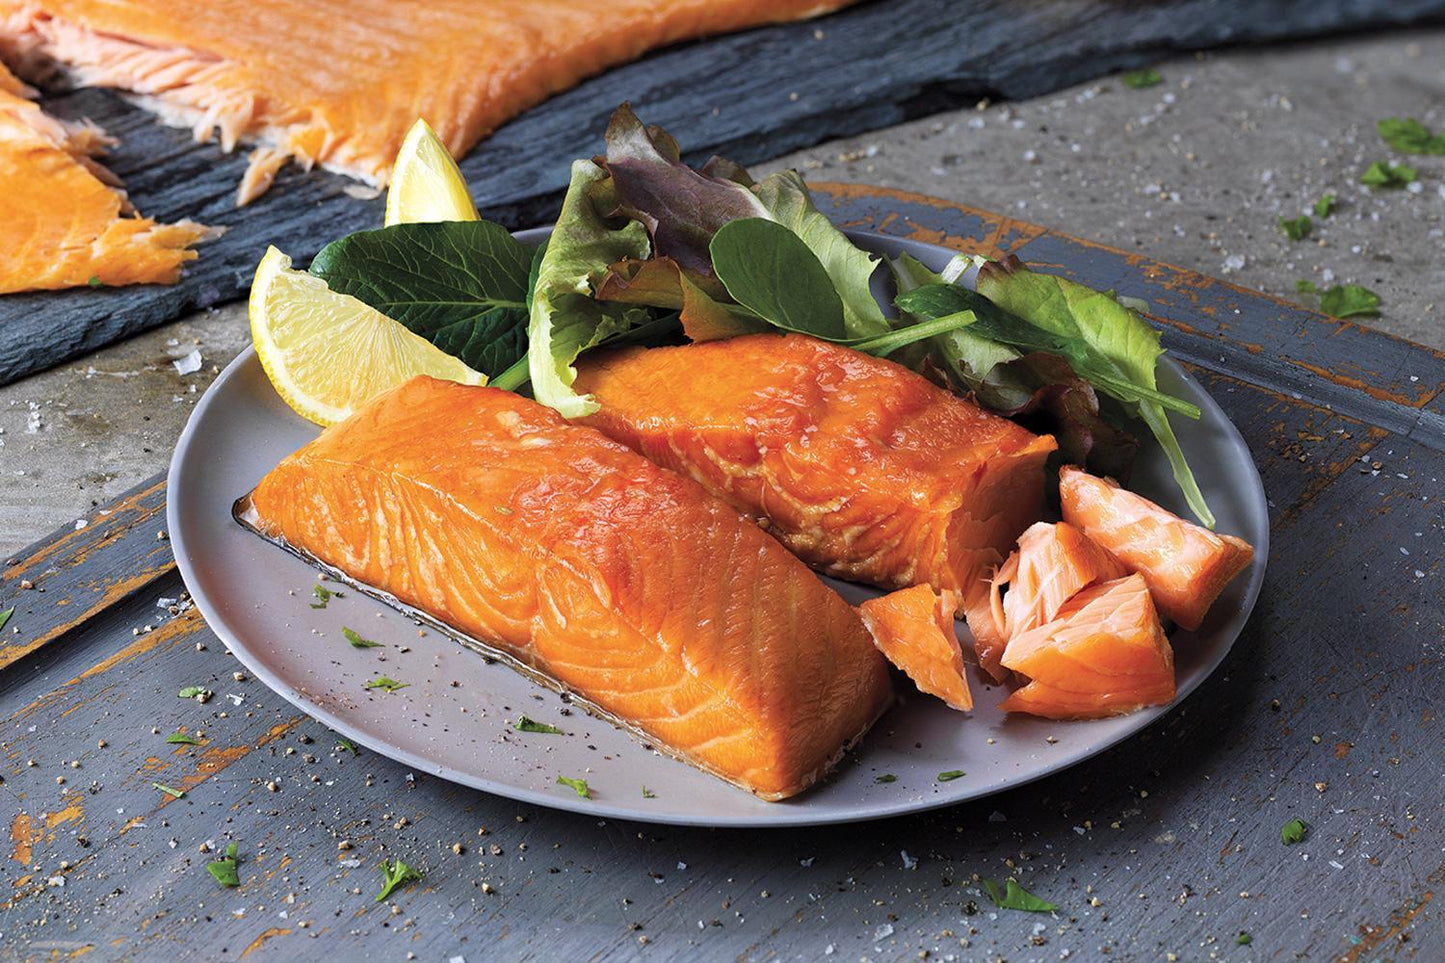 Hot Smoked Salmon - 200g | DukesHill Scottish Smoked Salmon